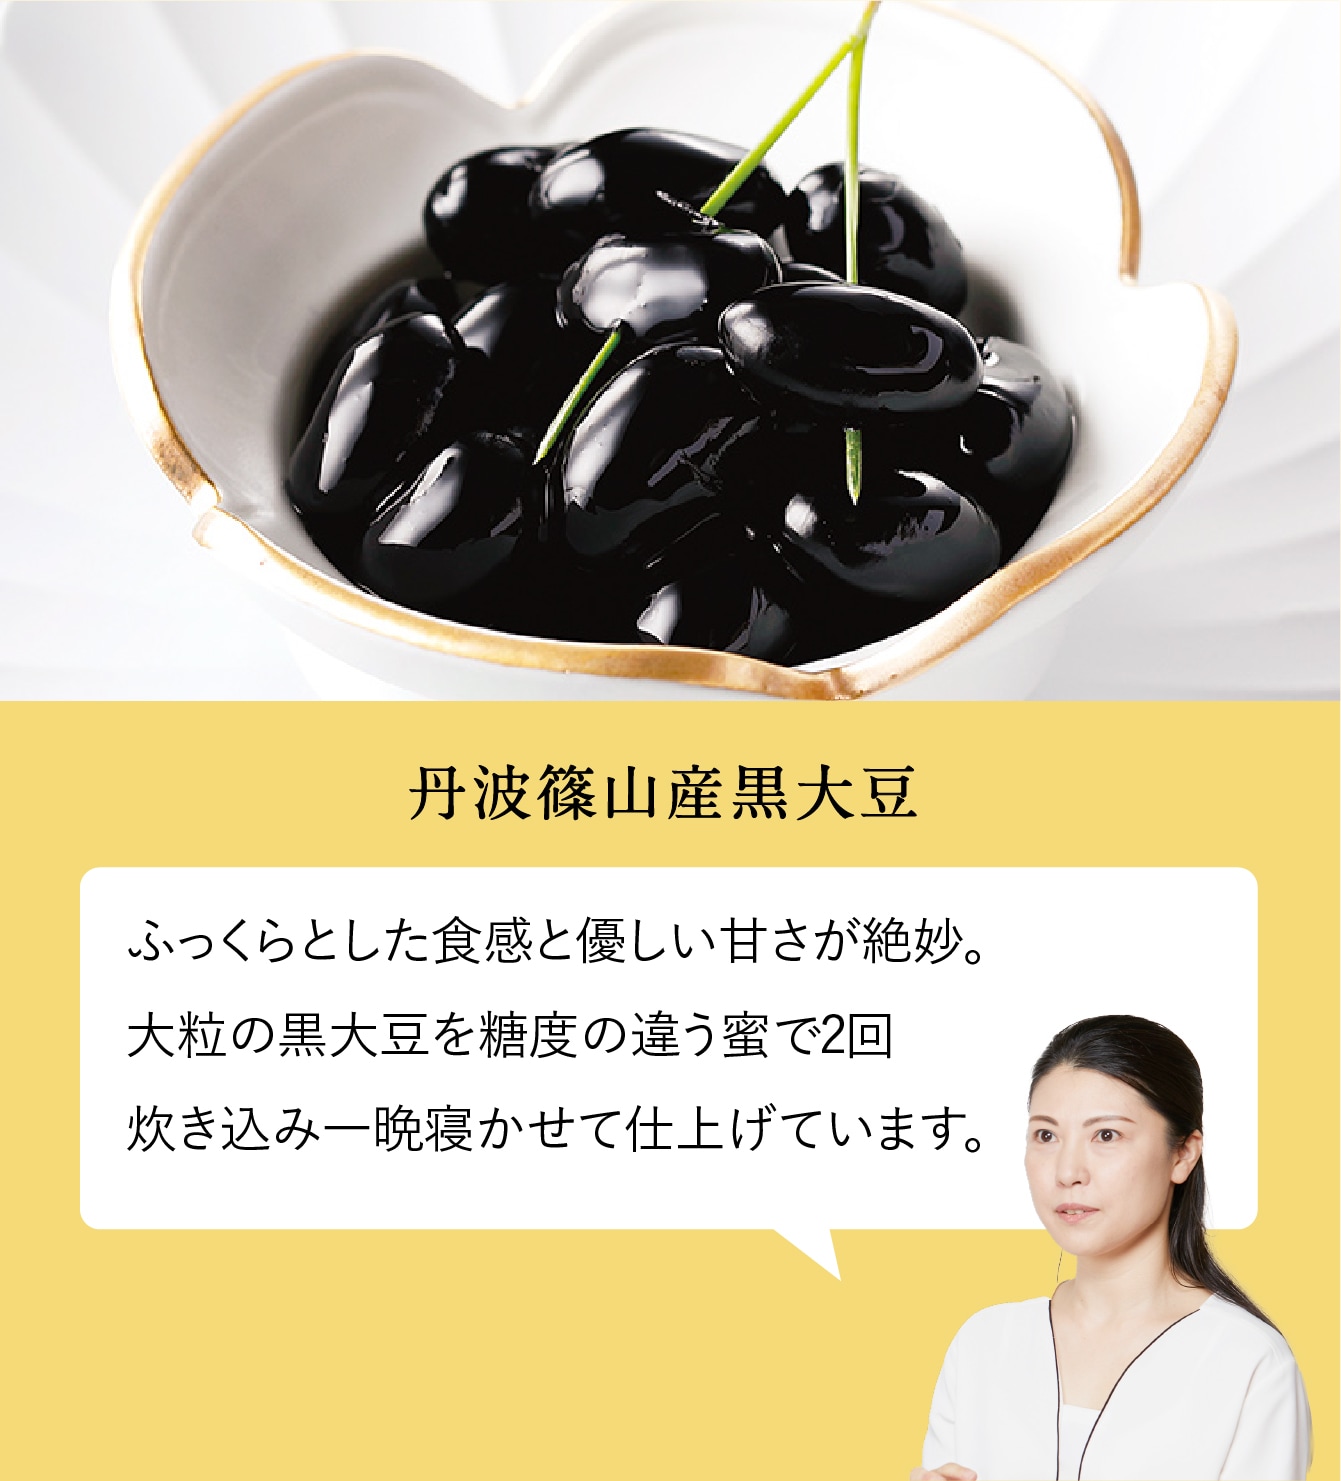 丹波篠山産黒大豆。ふっくらとした食感と優しい甘さが絶妙。
        大粒の黒大豆を糖度の違う蜜で2回炊き込み一晩寝かせて仕上げています。